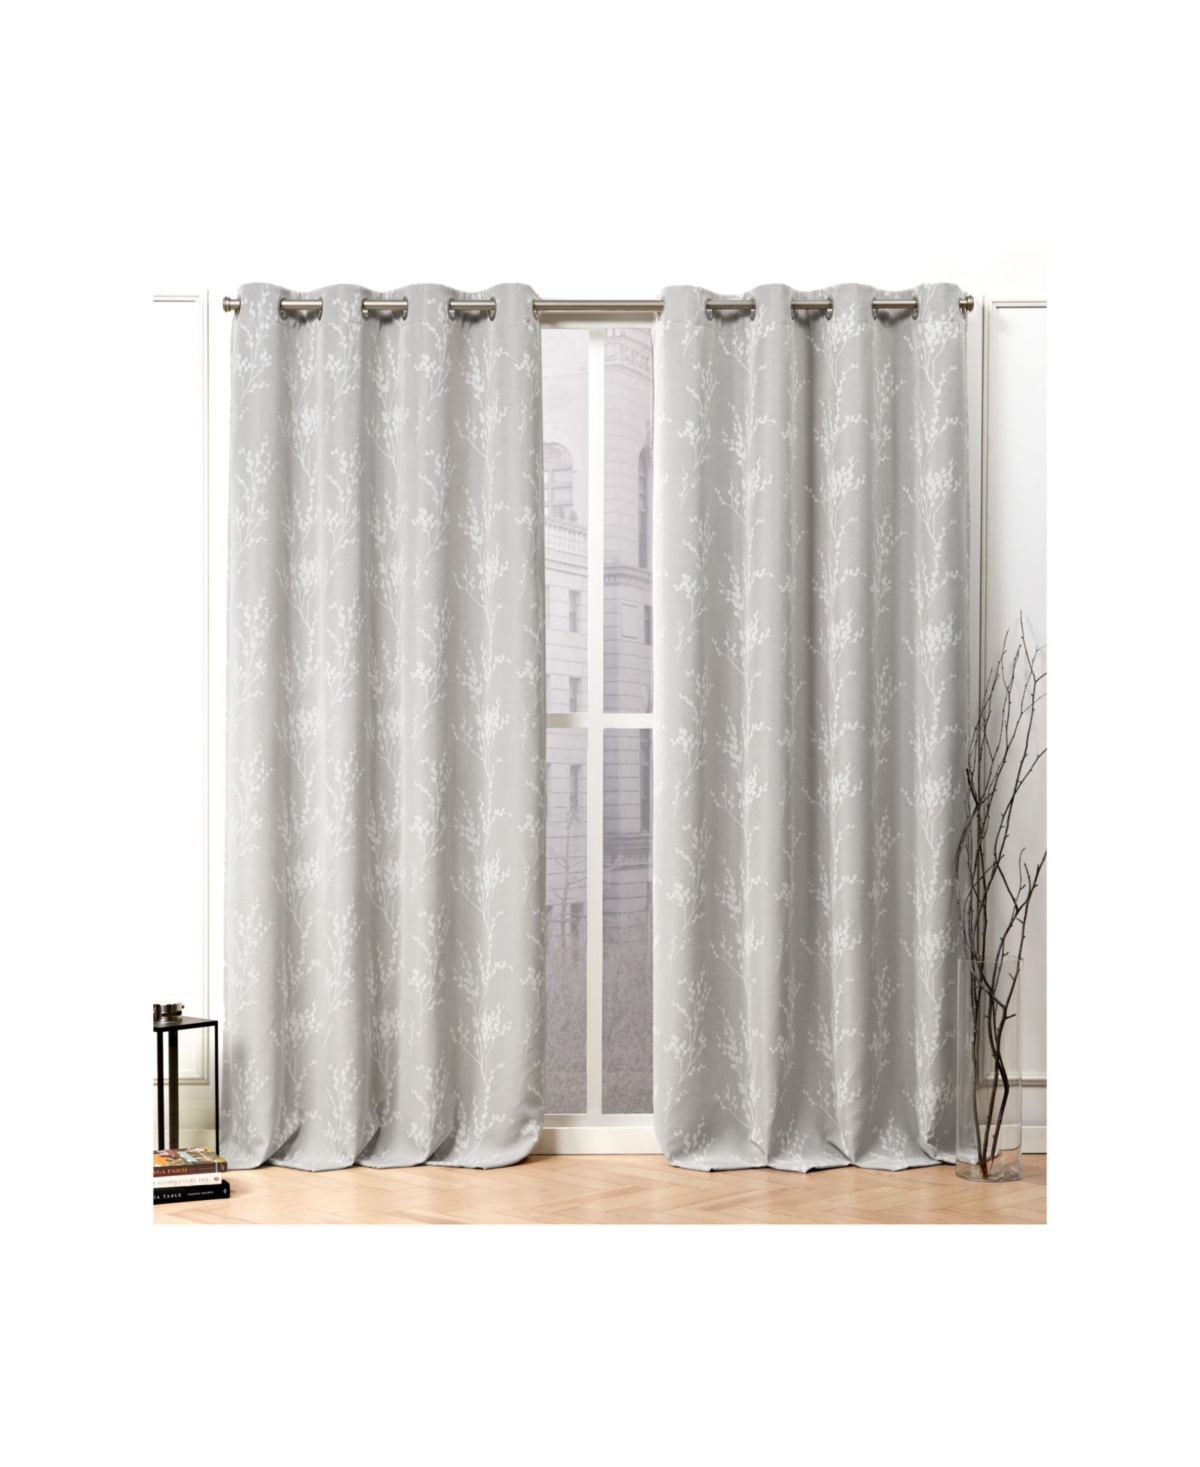 Turion Floral Blackout Grommet Top Curtain Panel Pair, 52" X 96" - Light Past